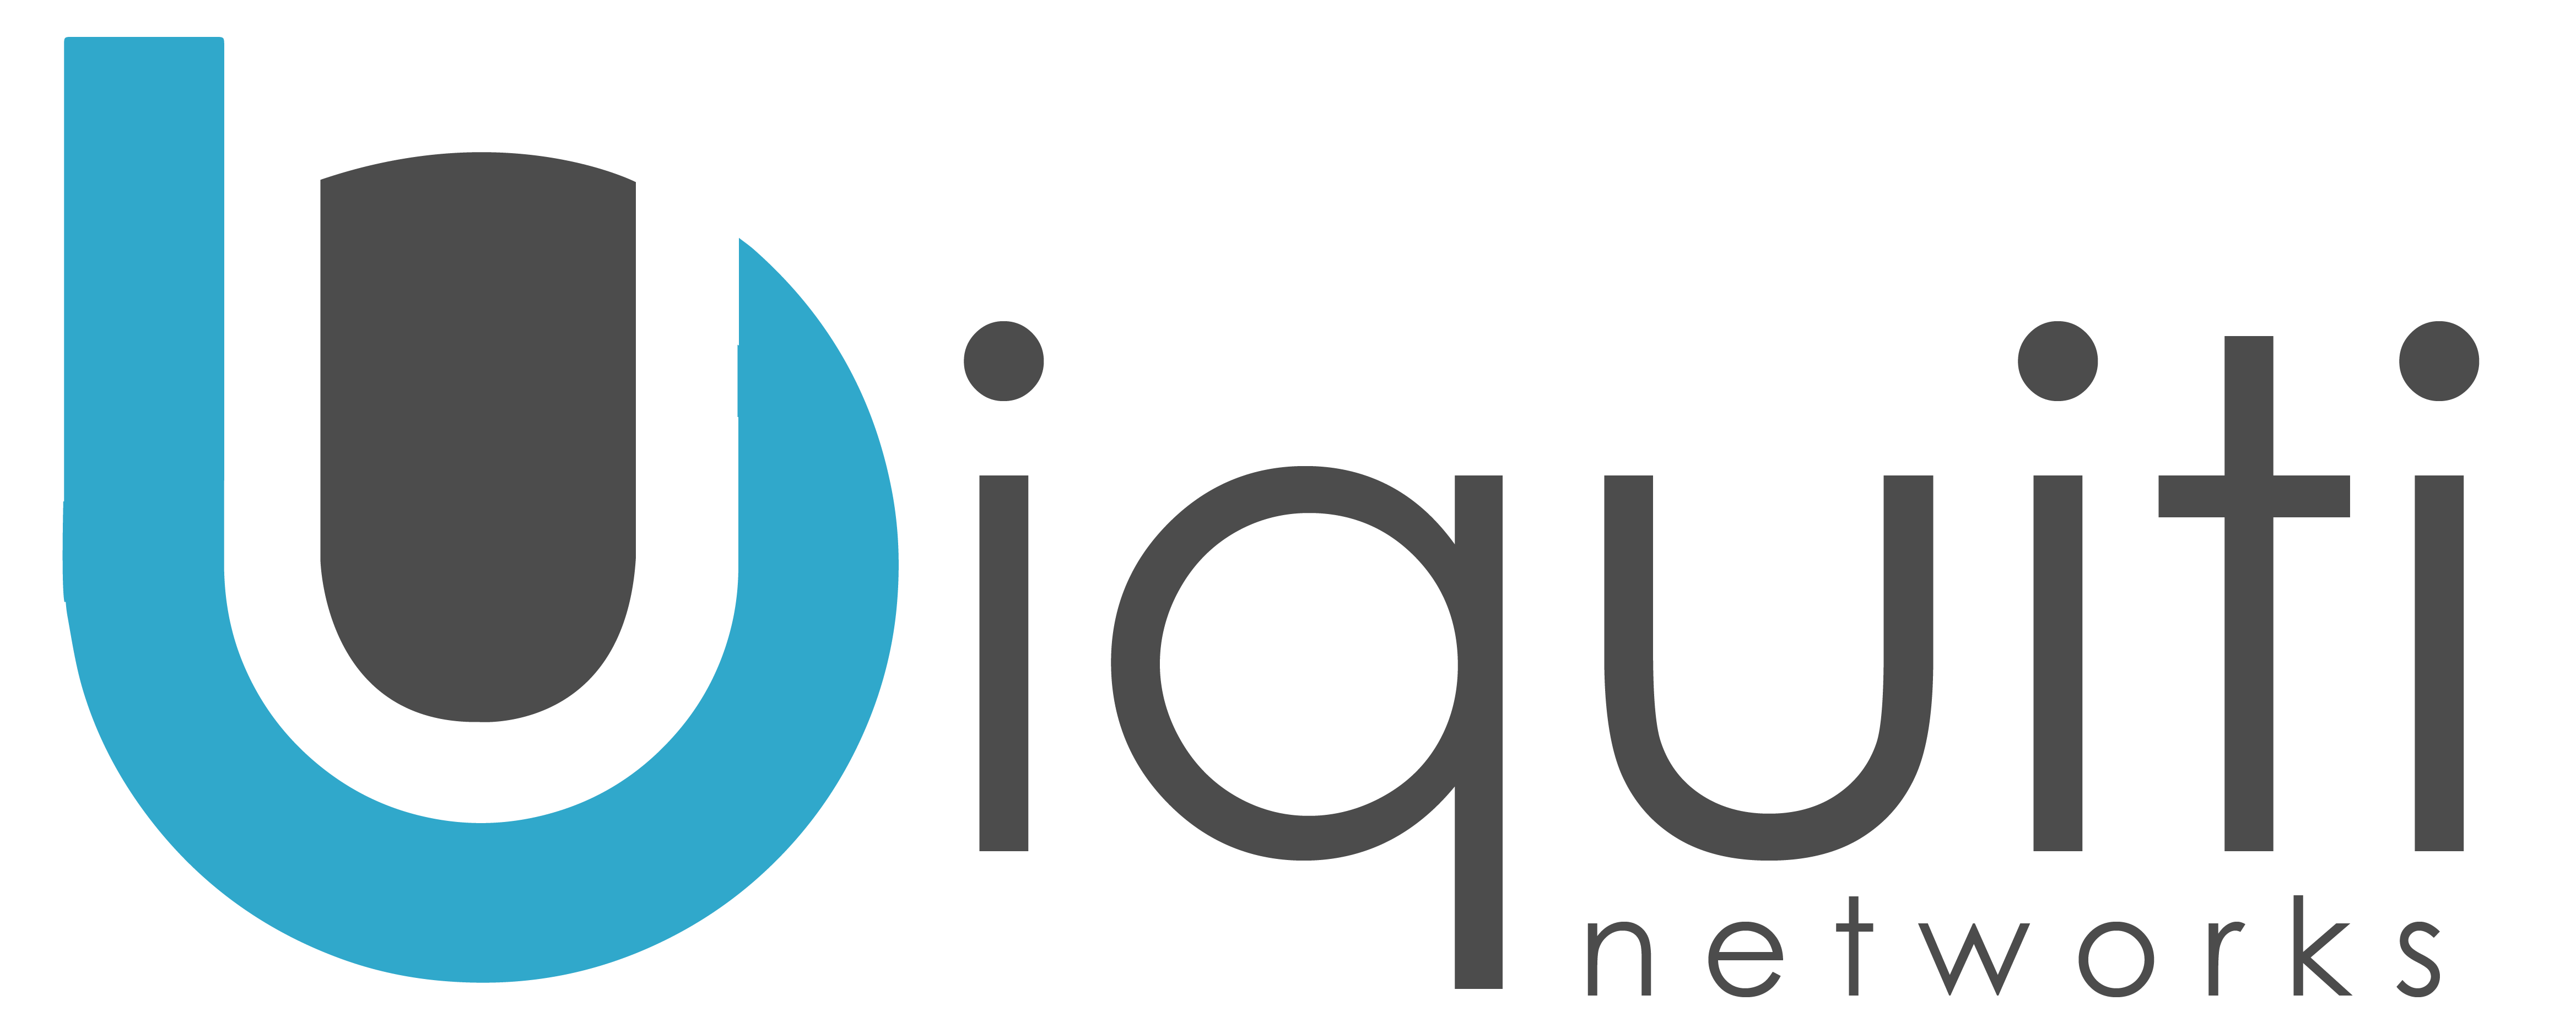 Ubiquiti Logo - logo-ubiquiti-01 - Lloyd's Electric Service, Inc.